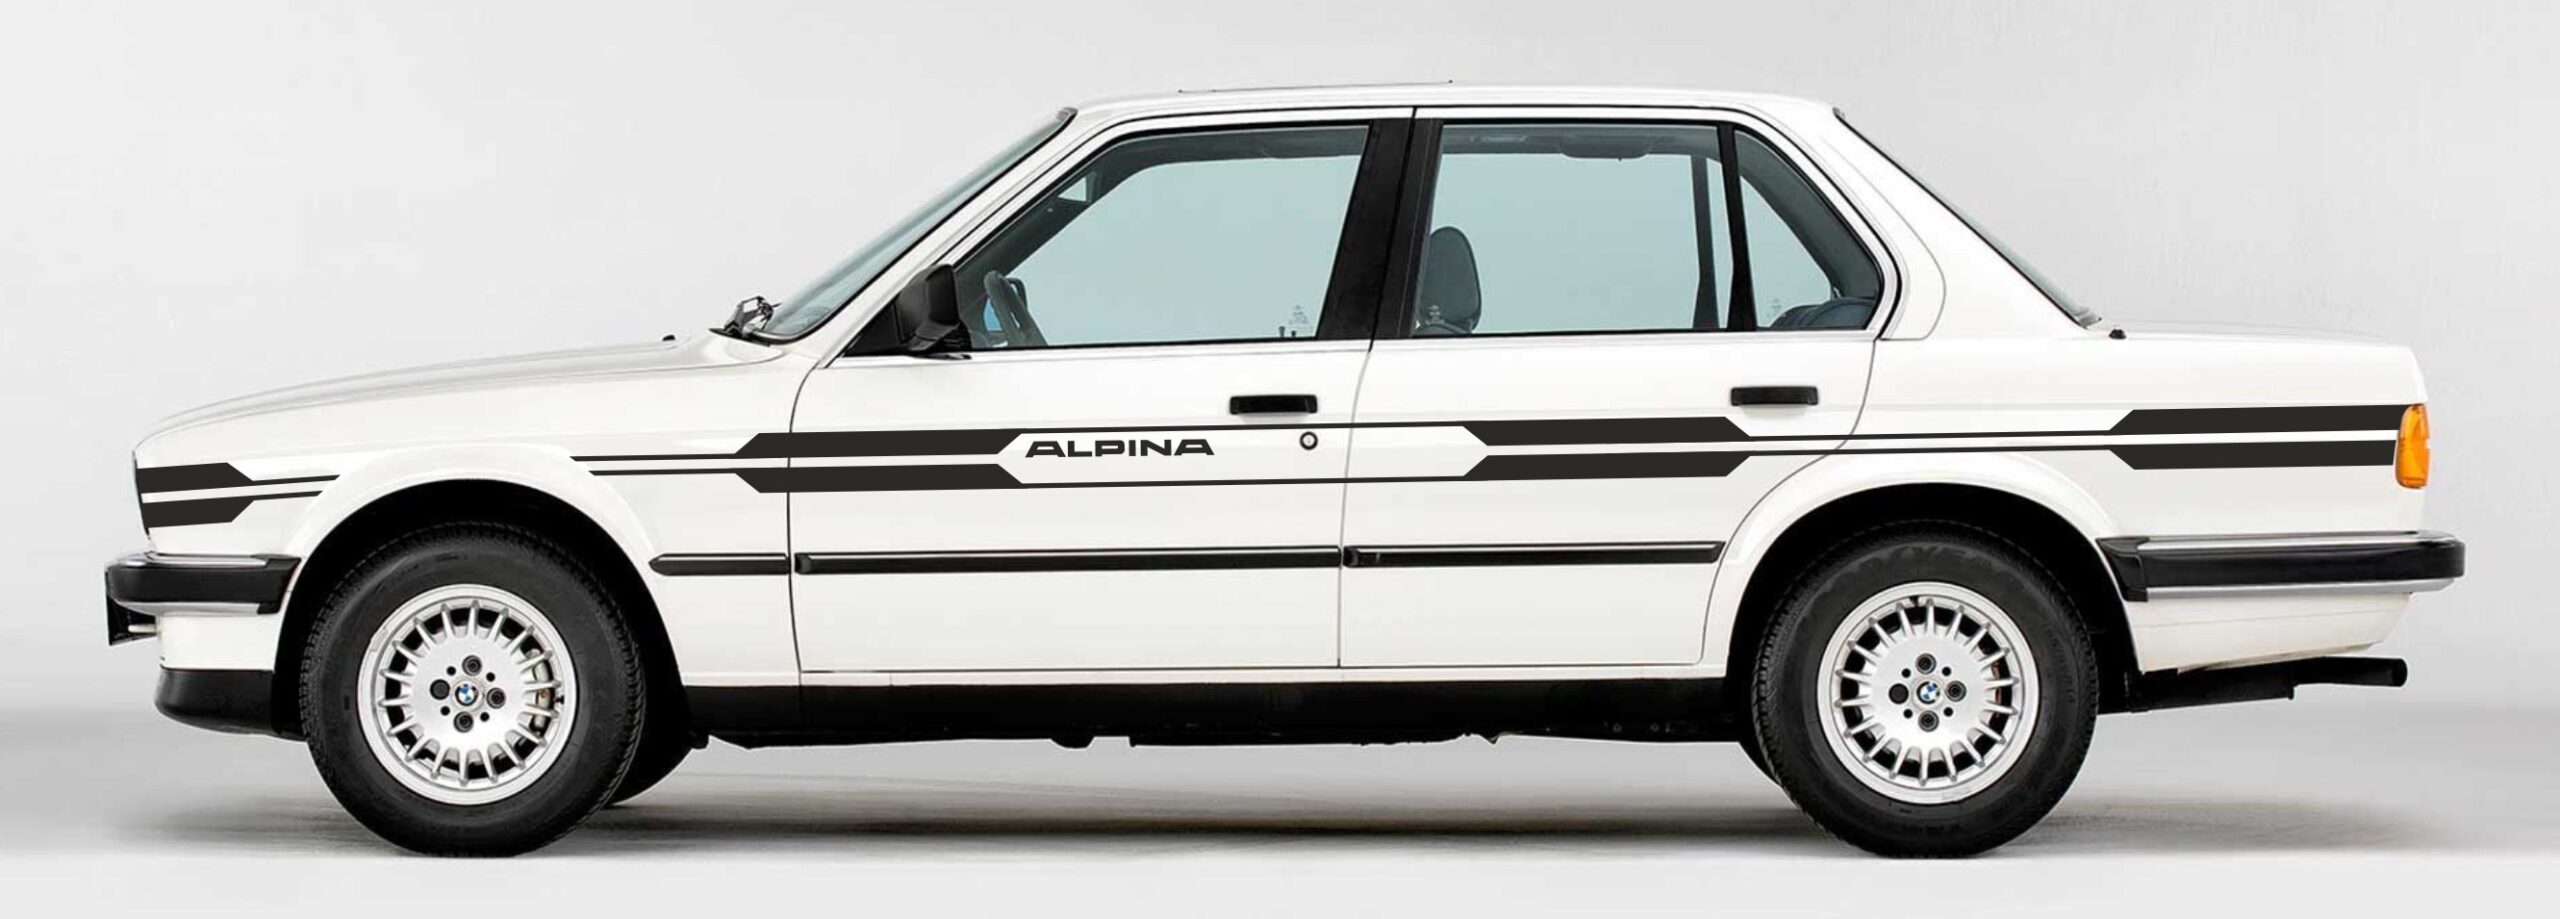 BMW ALPINA naklejki decals stripes sticker aufkleber nalepky samolepky tuning